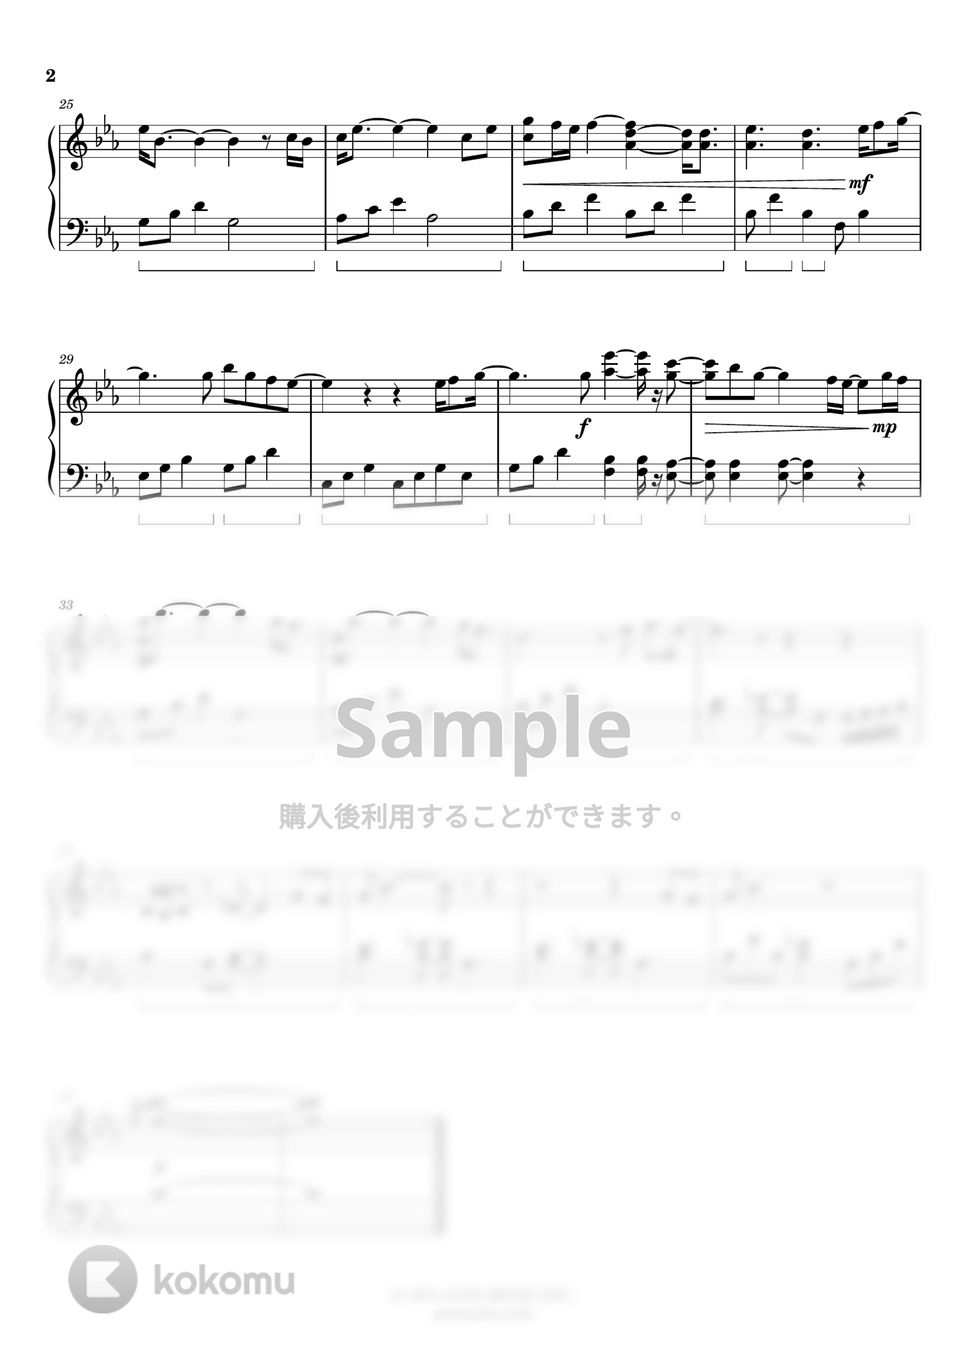 荒井由実 - ひこうき雲 (簡単楽譜) by ピアノ塾